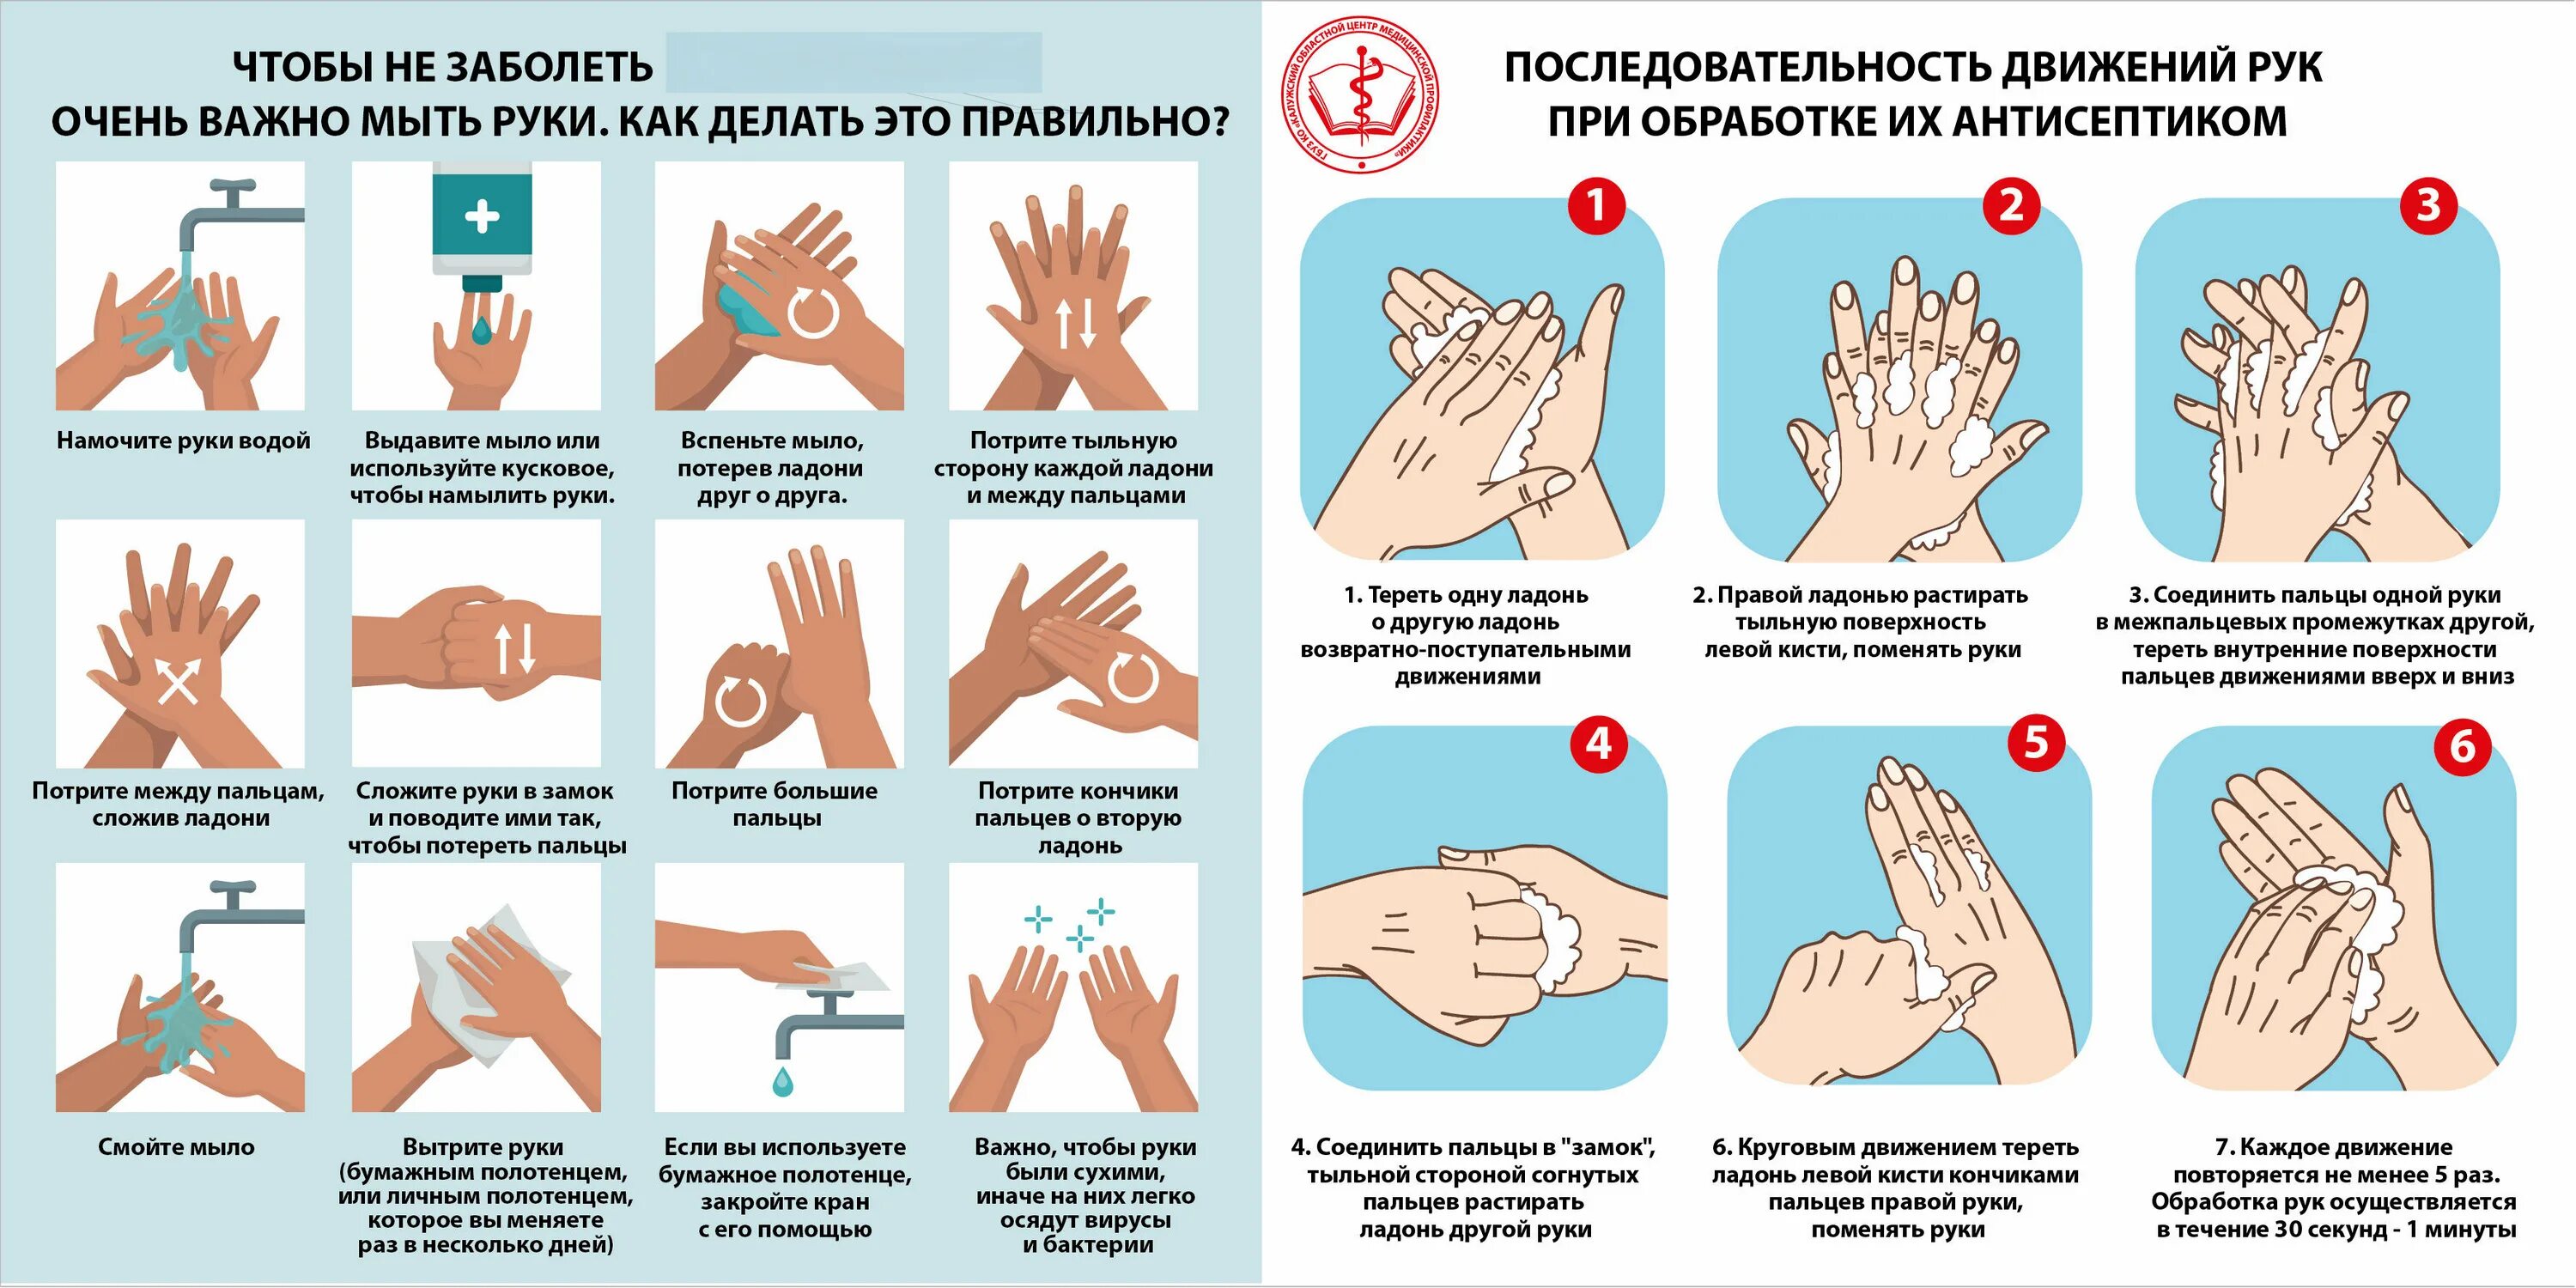 Приемы обработки рук. Алгоритм дезинфекции рук медицинского персонала. Гигиеническая и антисептическая обработка рук. Гигиеническая обработка рук кожным антисептиком проводится. Памятка обработать руки антисептиком.